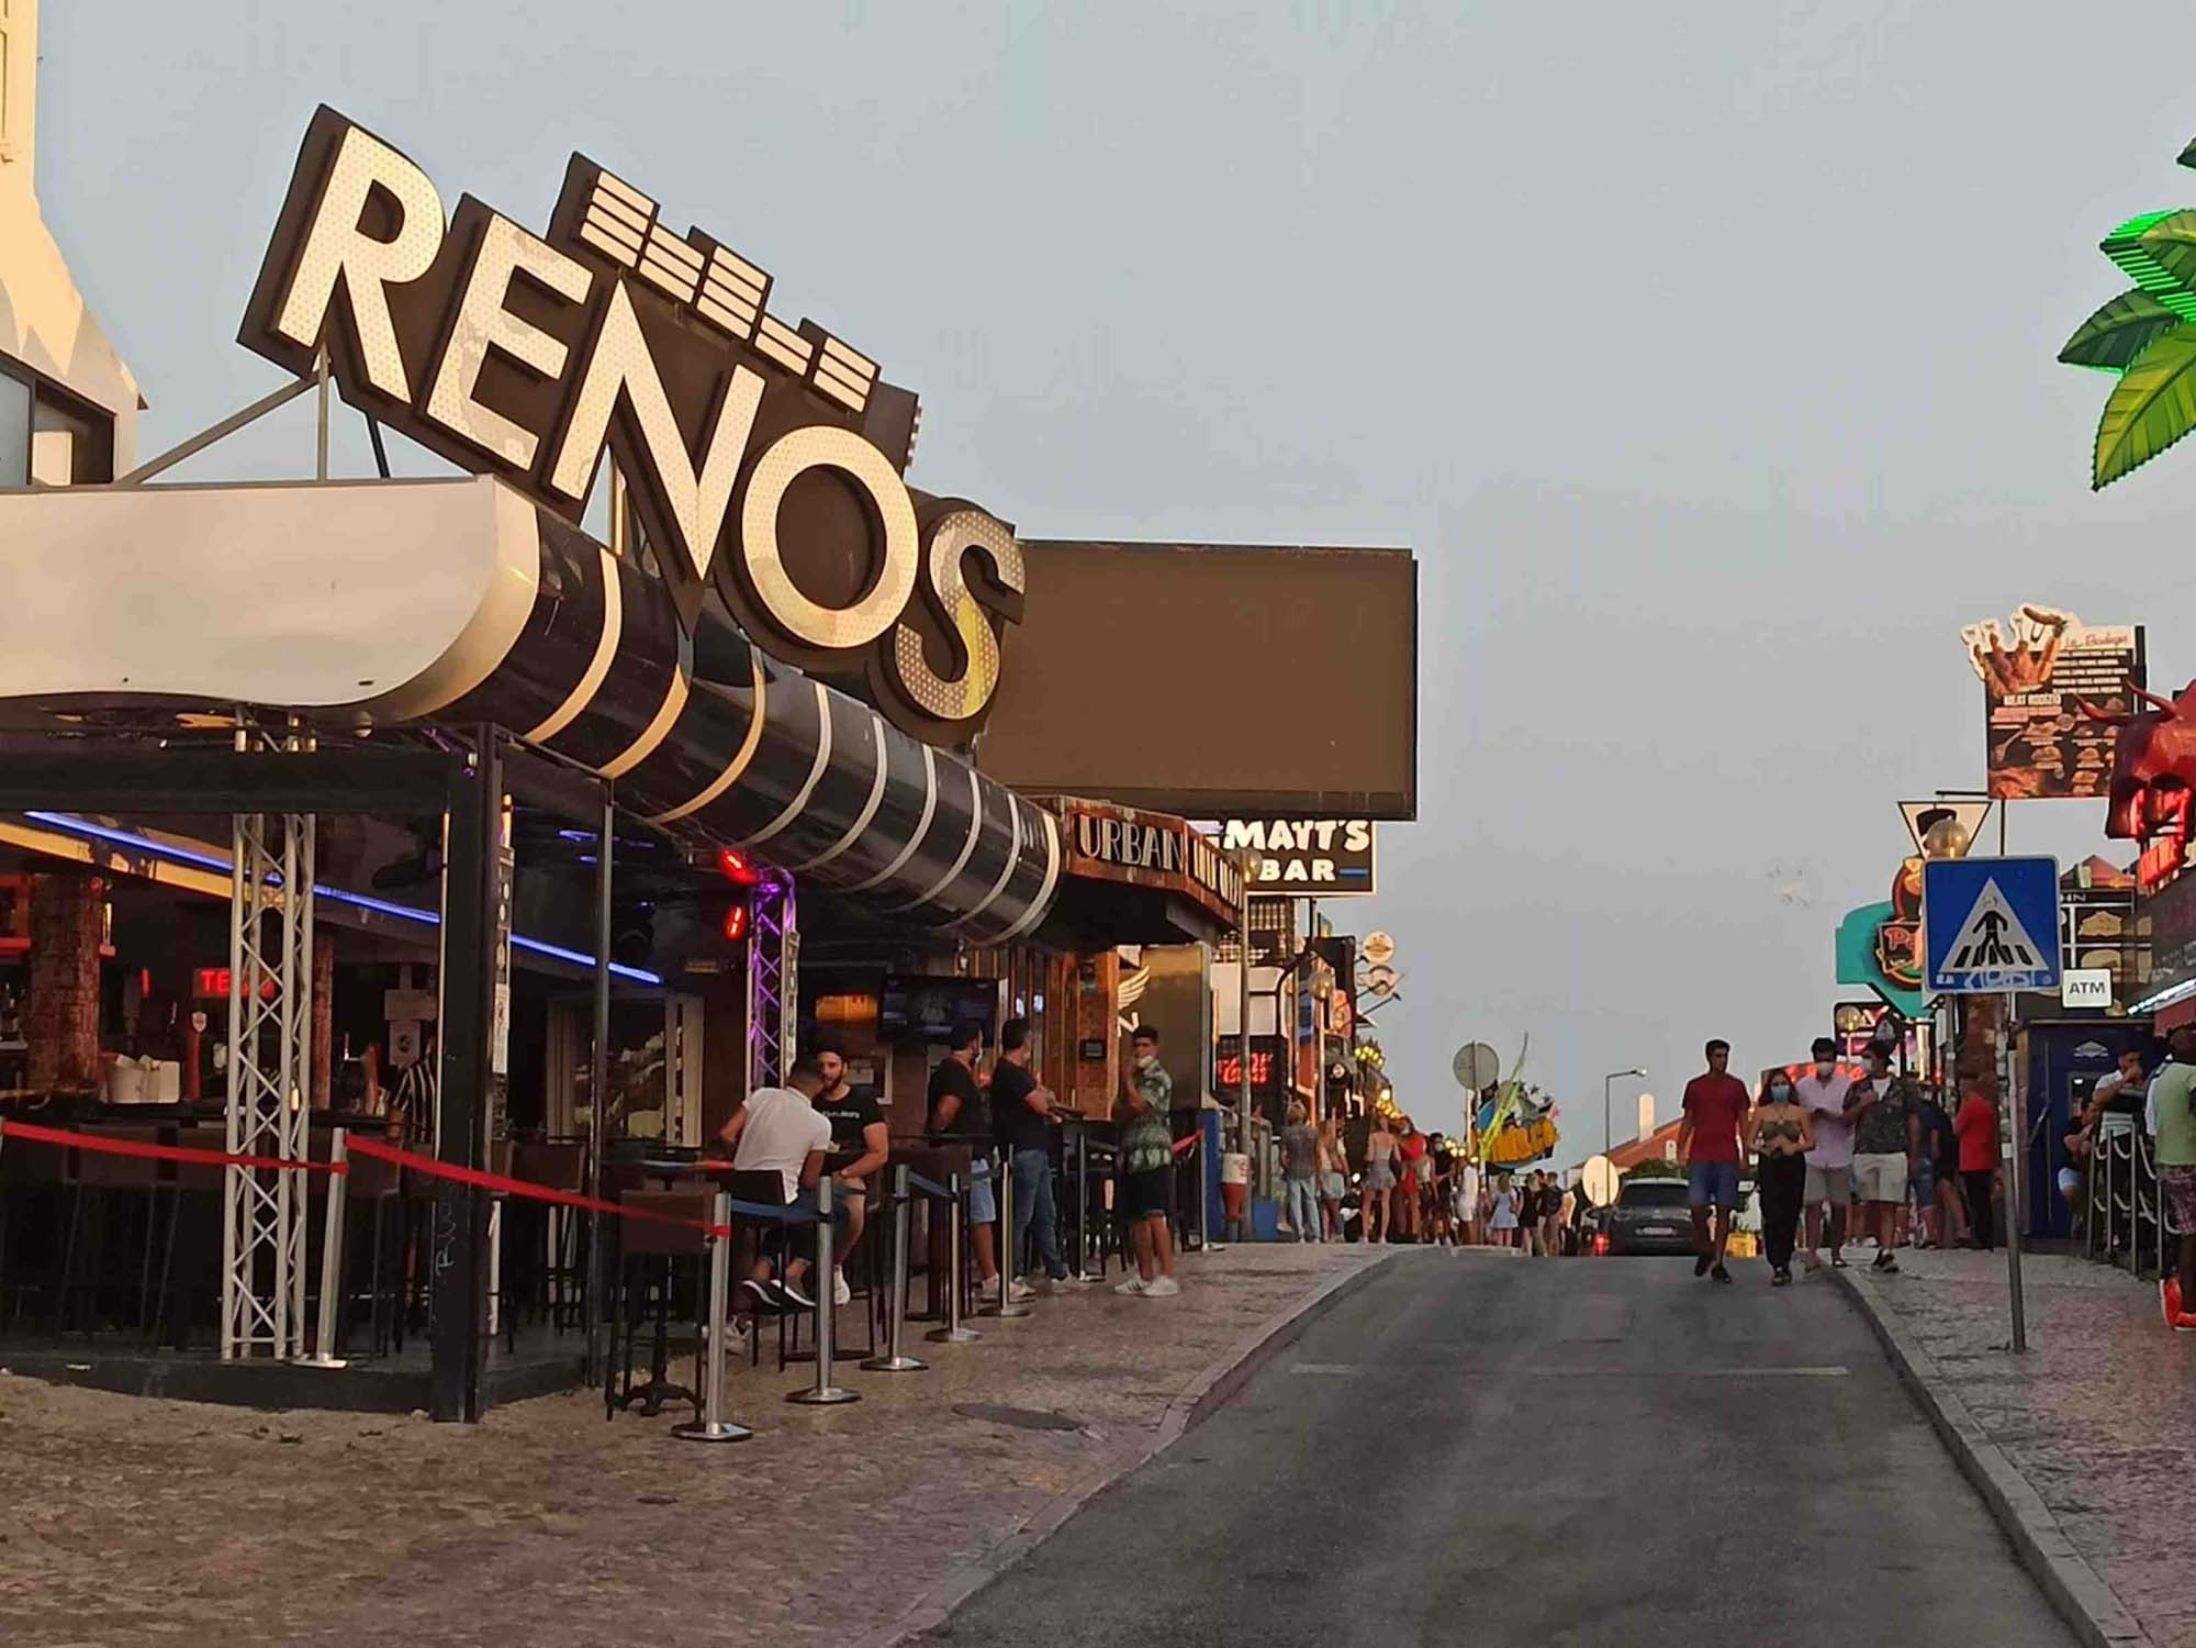 Reno's - Best Bars in Albufeira